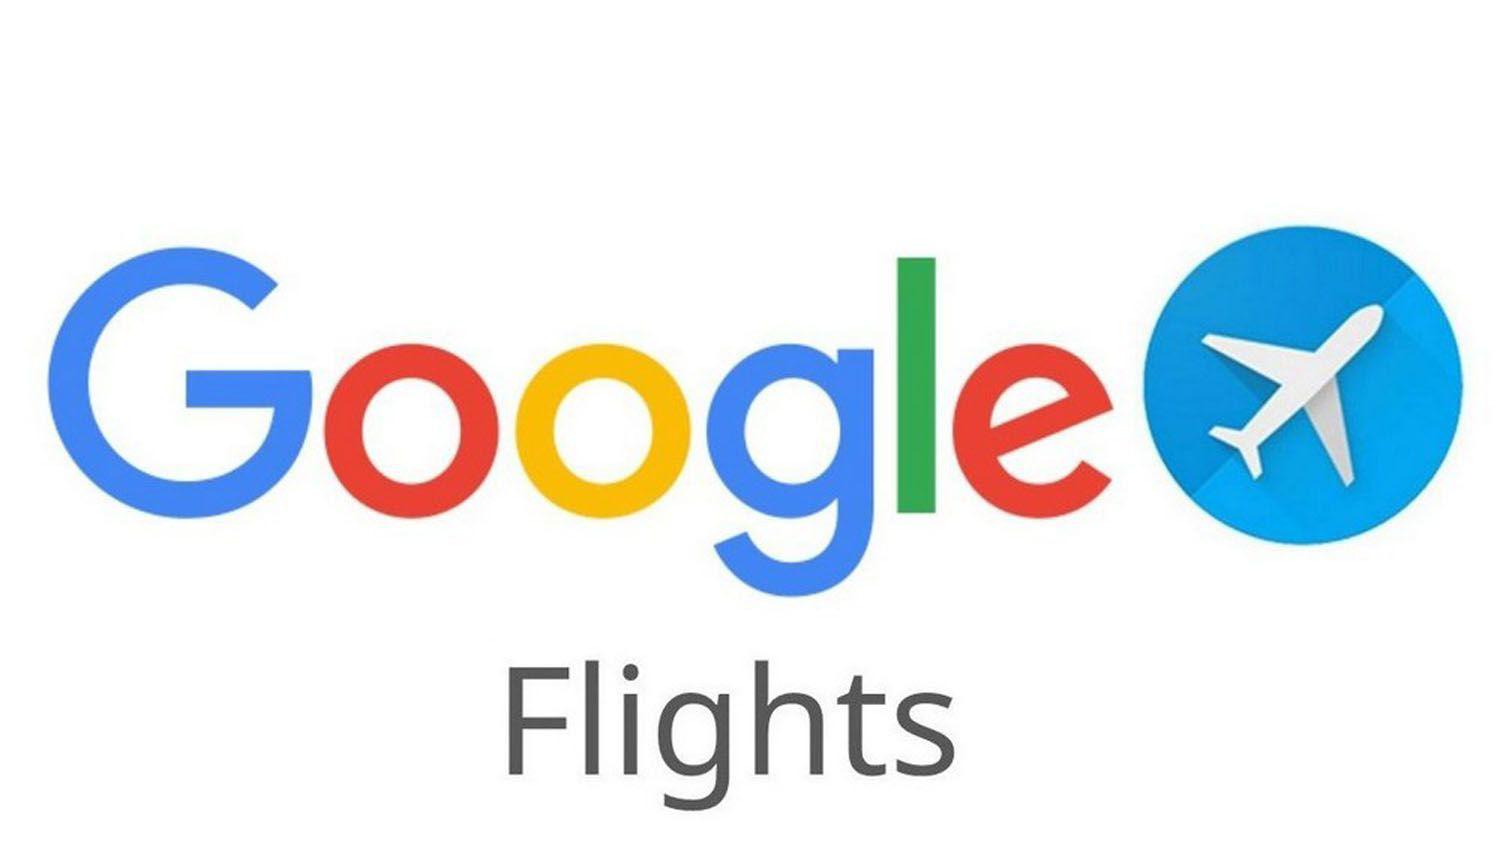 Paquetes de hotel y vuelos baratos- la aplicacioacuten escondida de Google para encontrar los precios maacutes bajos del mercado